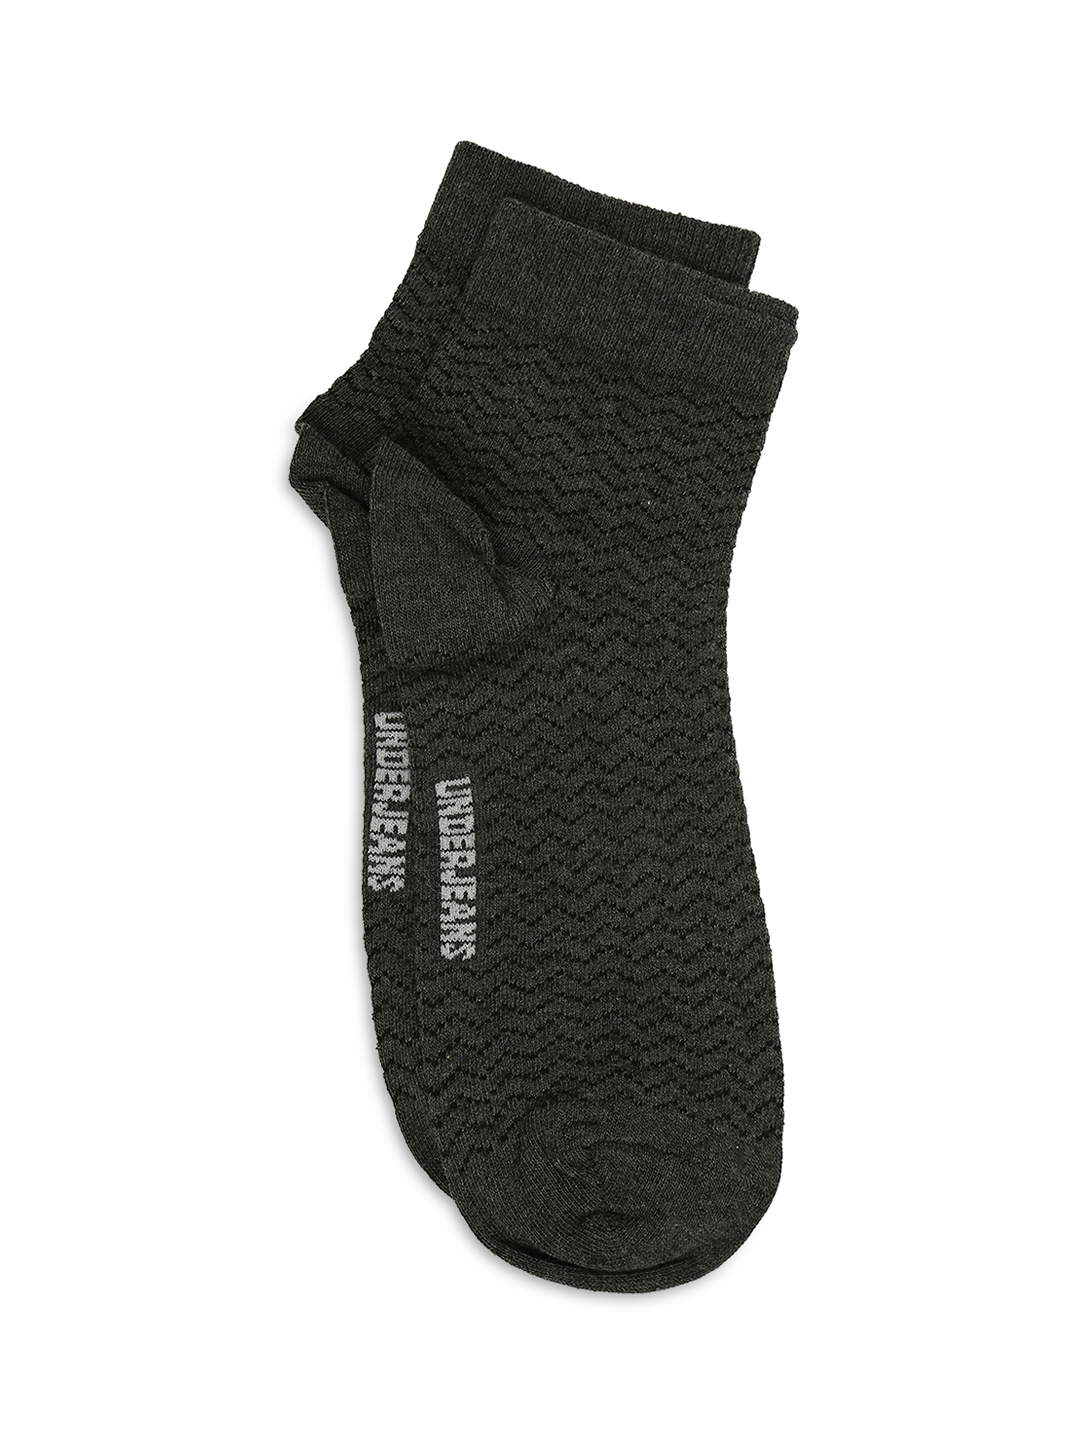 spykar | Underjeans by Spykar Premium White & Anthra Melange Ankle Length Socks - Pack Of 2 6